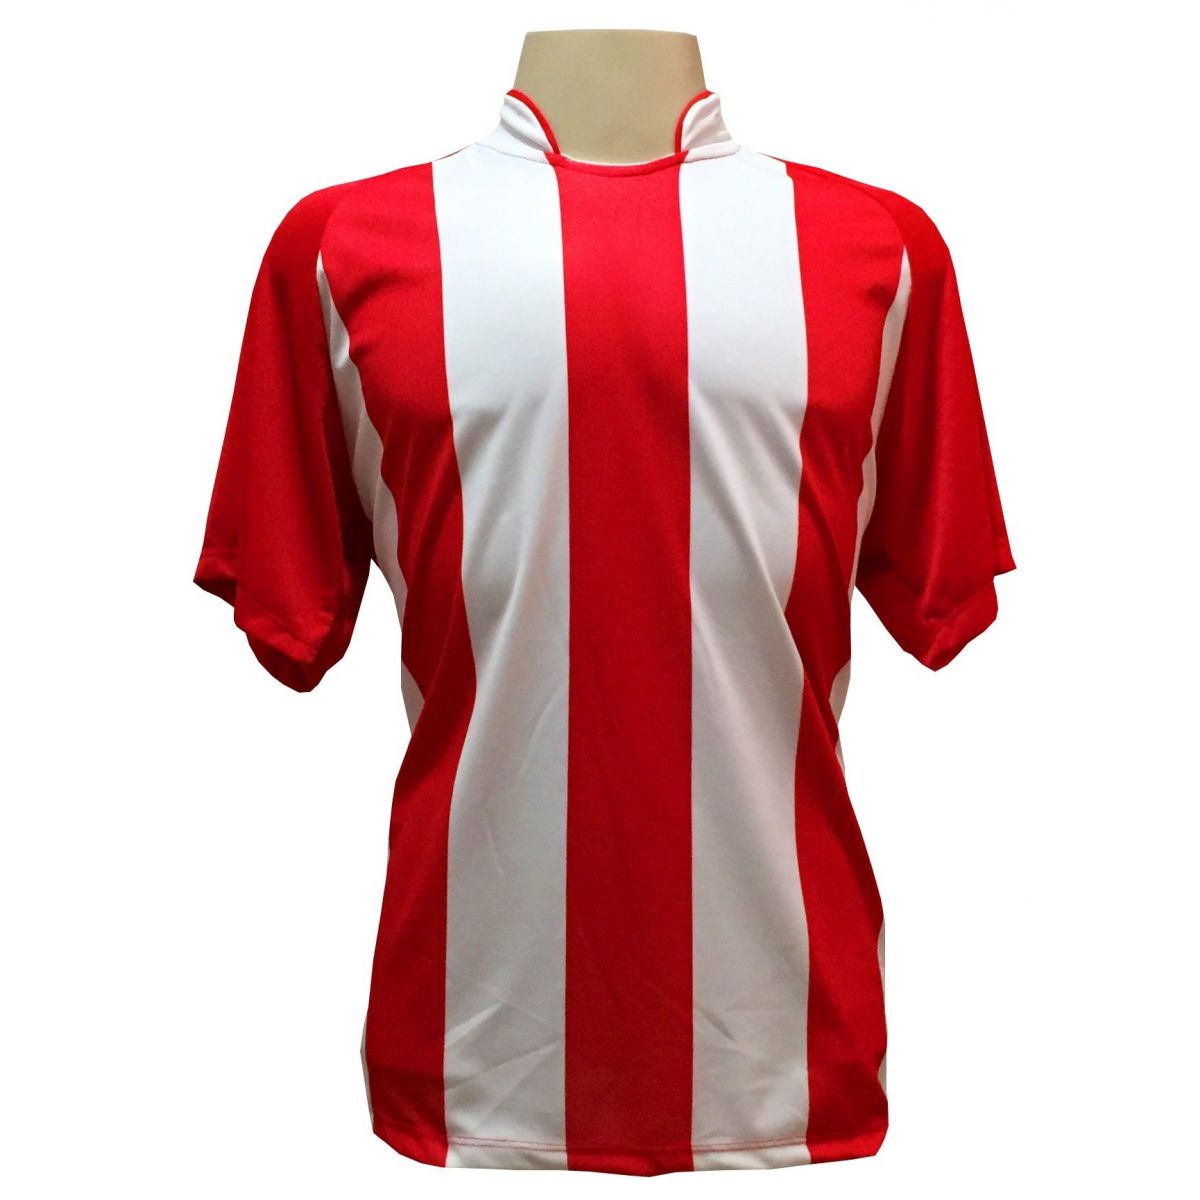 Uniforme Esportivo com 20 camisas modelo Milan Vermelho/Branco + 20 calções modelo Madrid + 1 Goleiro + Brindes